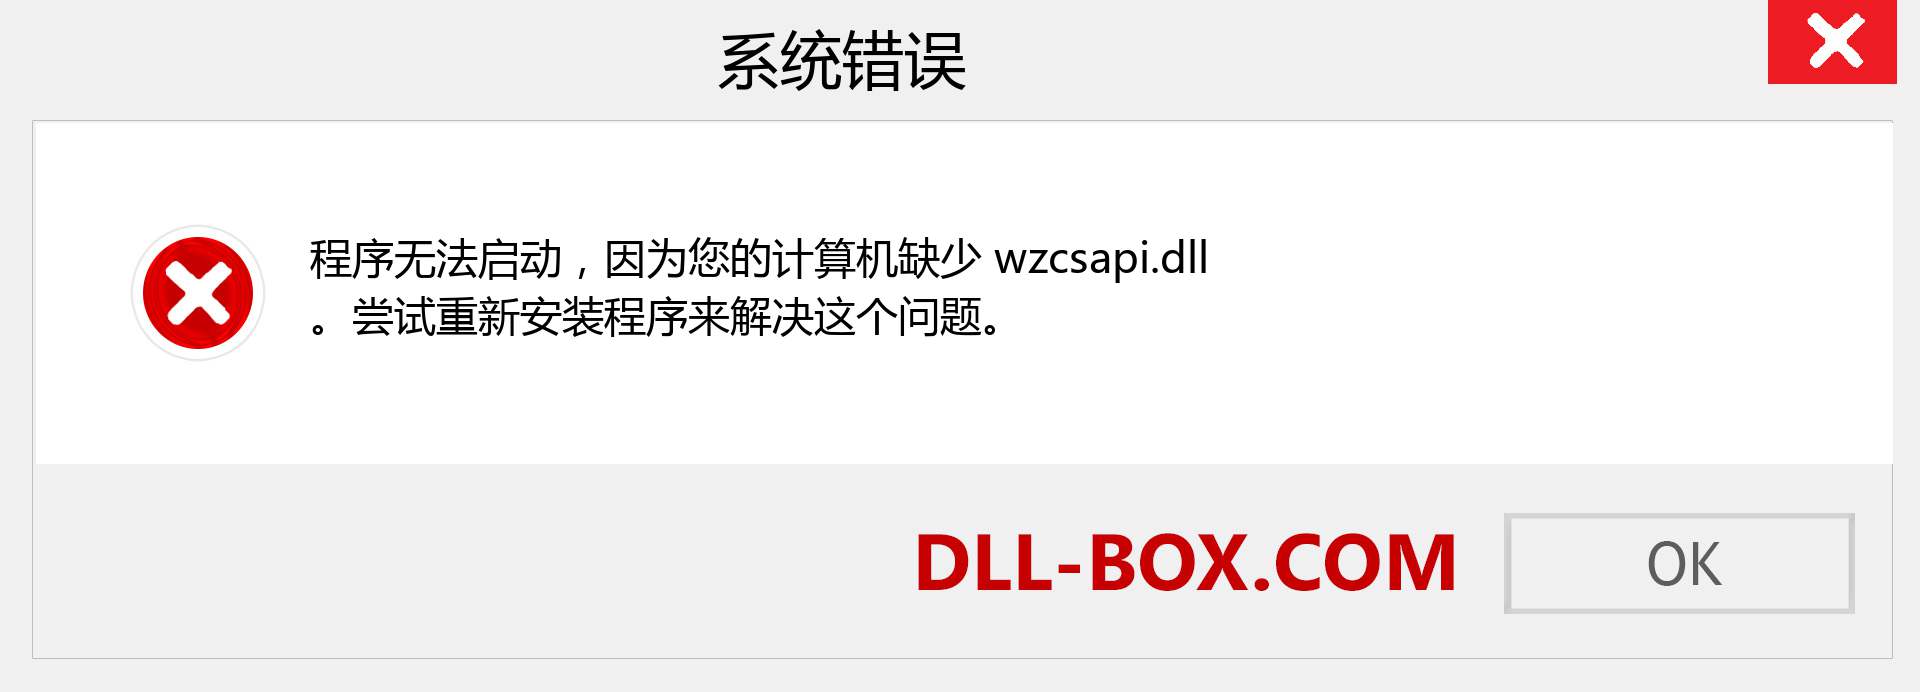 wzcsapi.dll 文件丢失？。 适用于 Windows 7、8、10 的下载 - 修复 Windows、照片、图像上的 wzcsapi dll 丢失错误